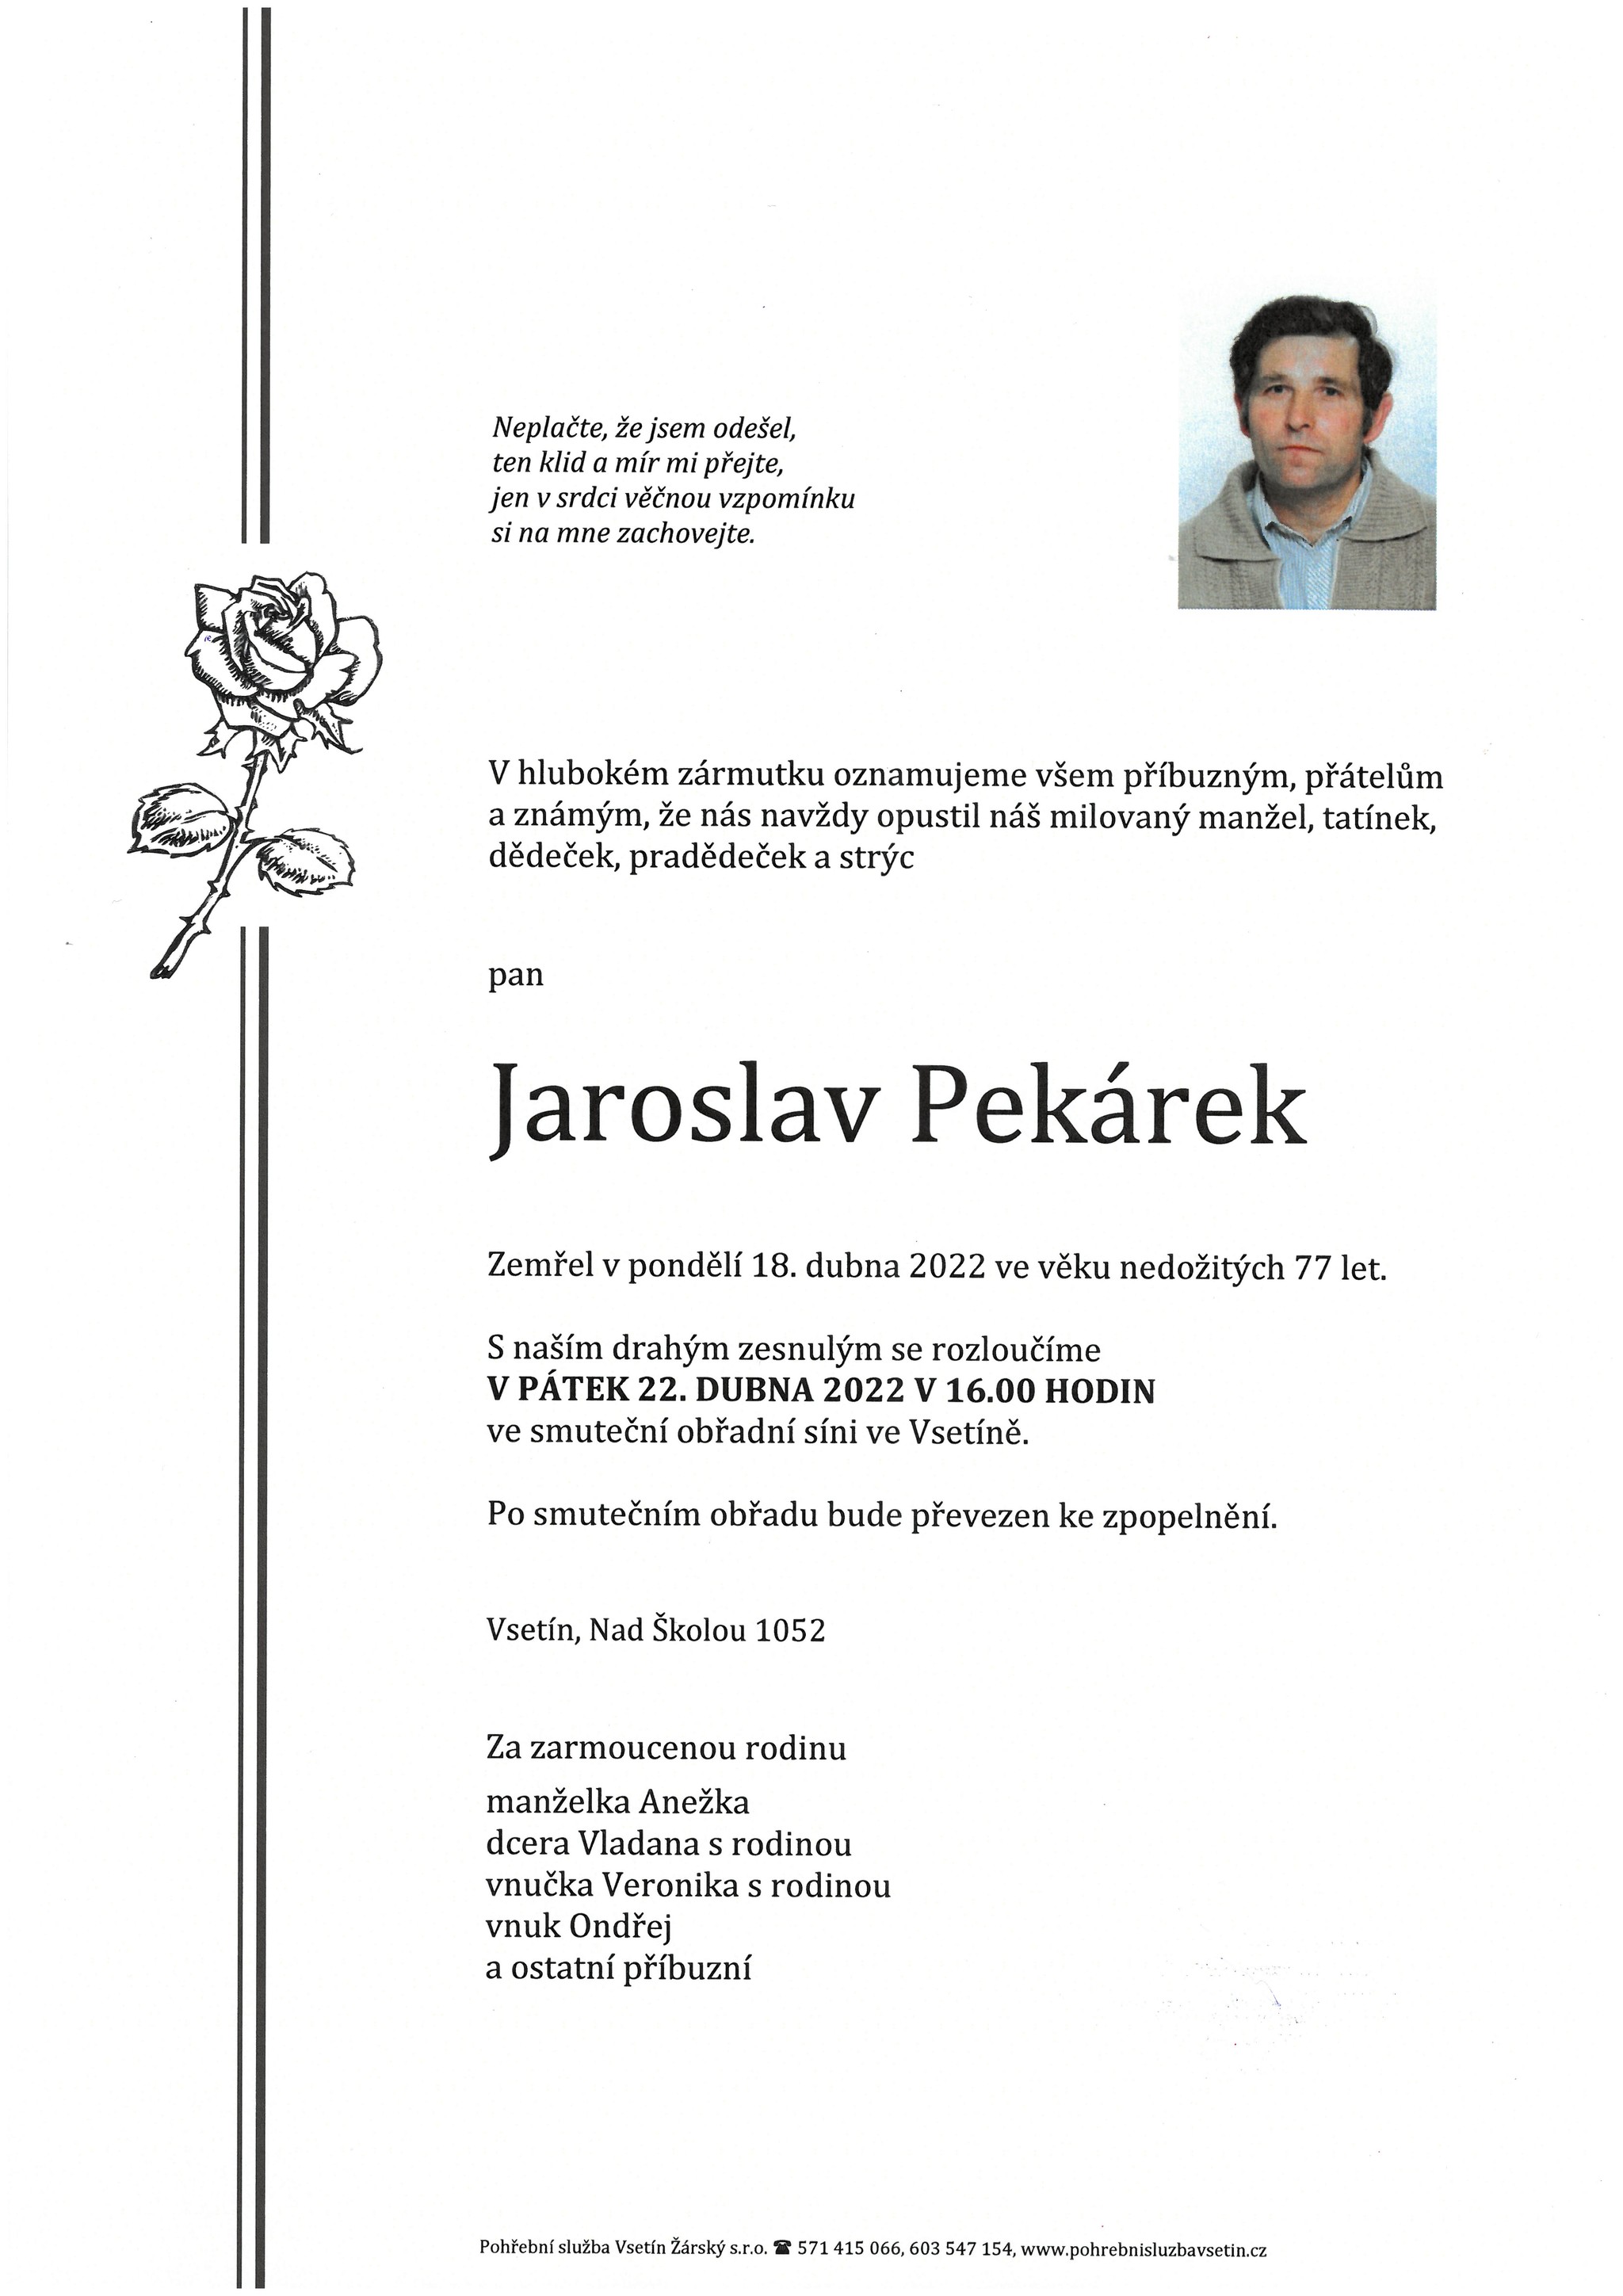 Jaroslav Pekárek